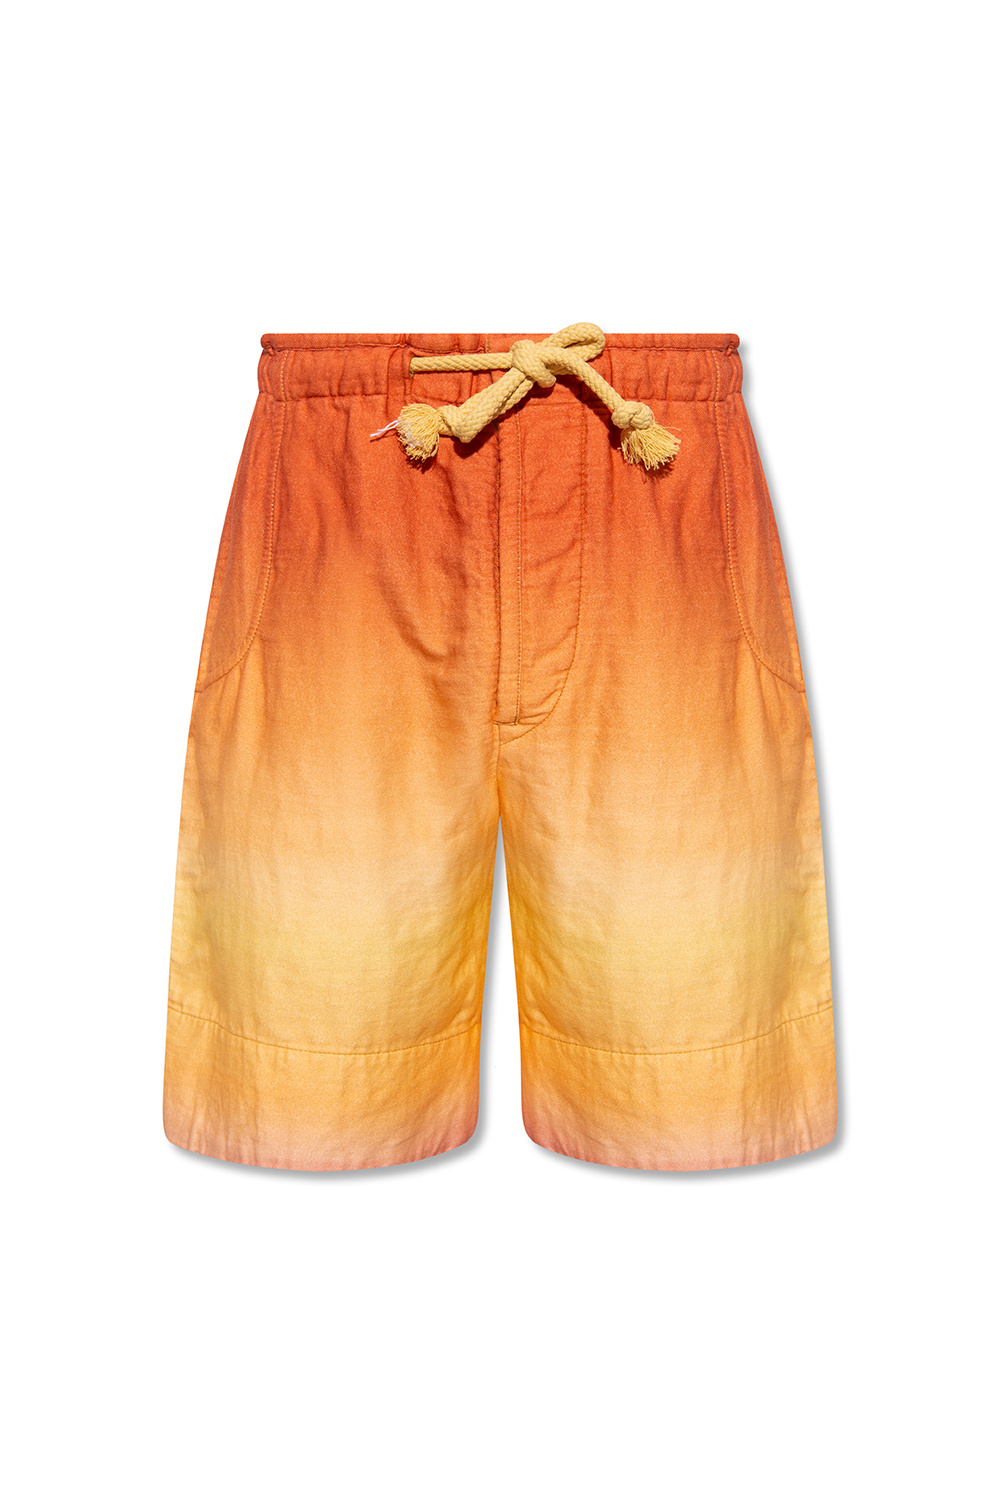 MARANT ‘Kleliandt’ hilfiger shorts